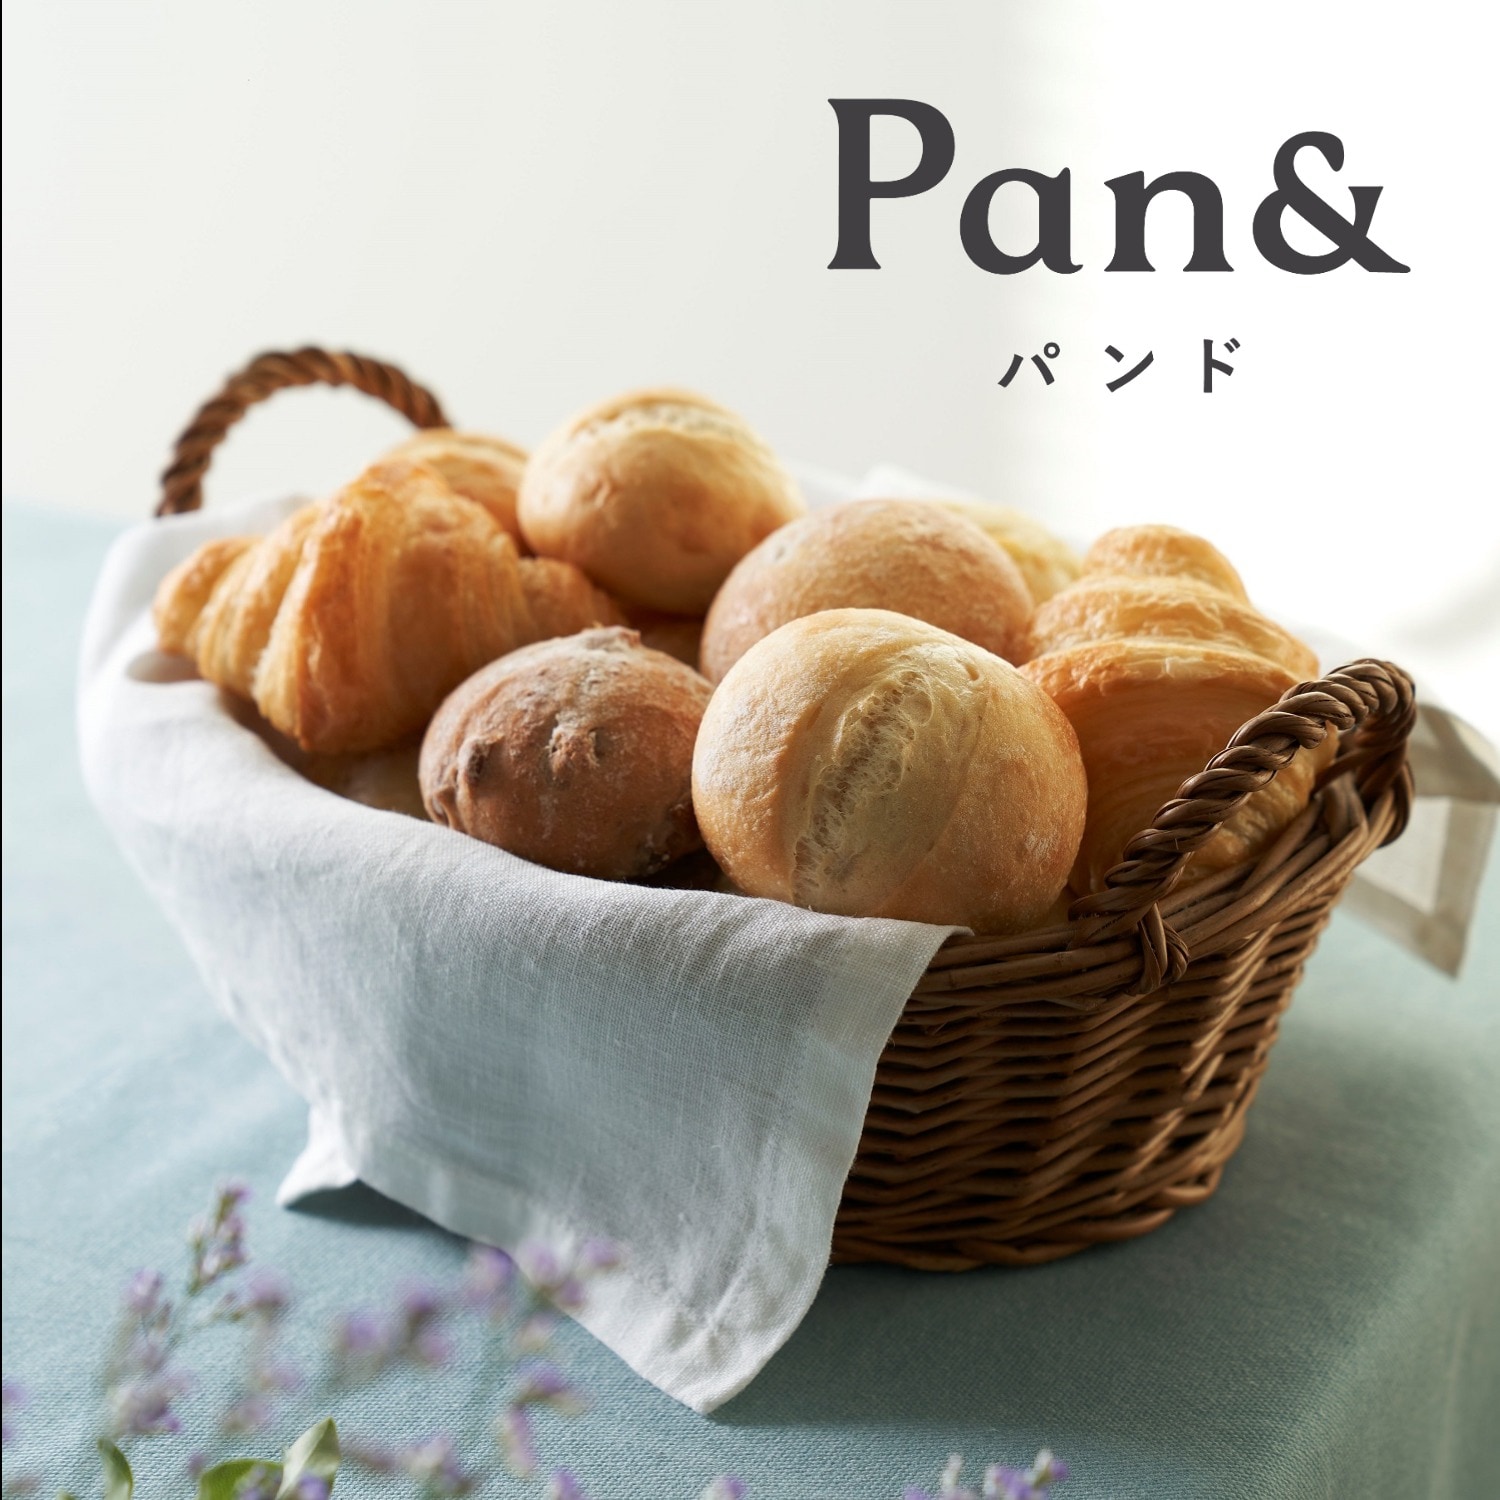 【Pan & 】Pan & バラエティ5種セット